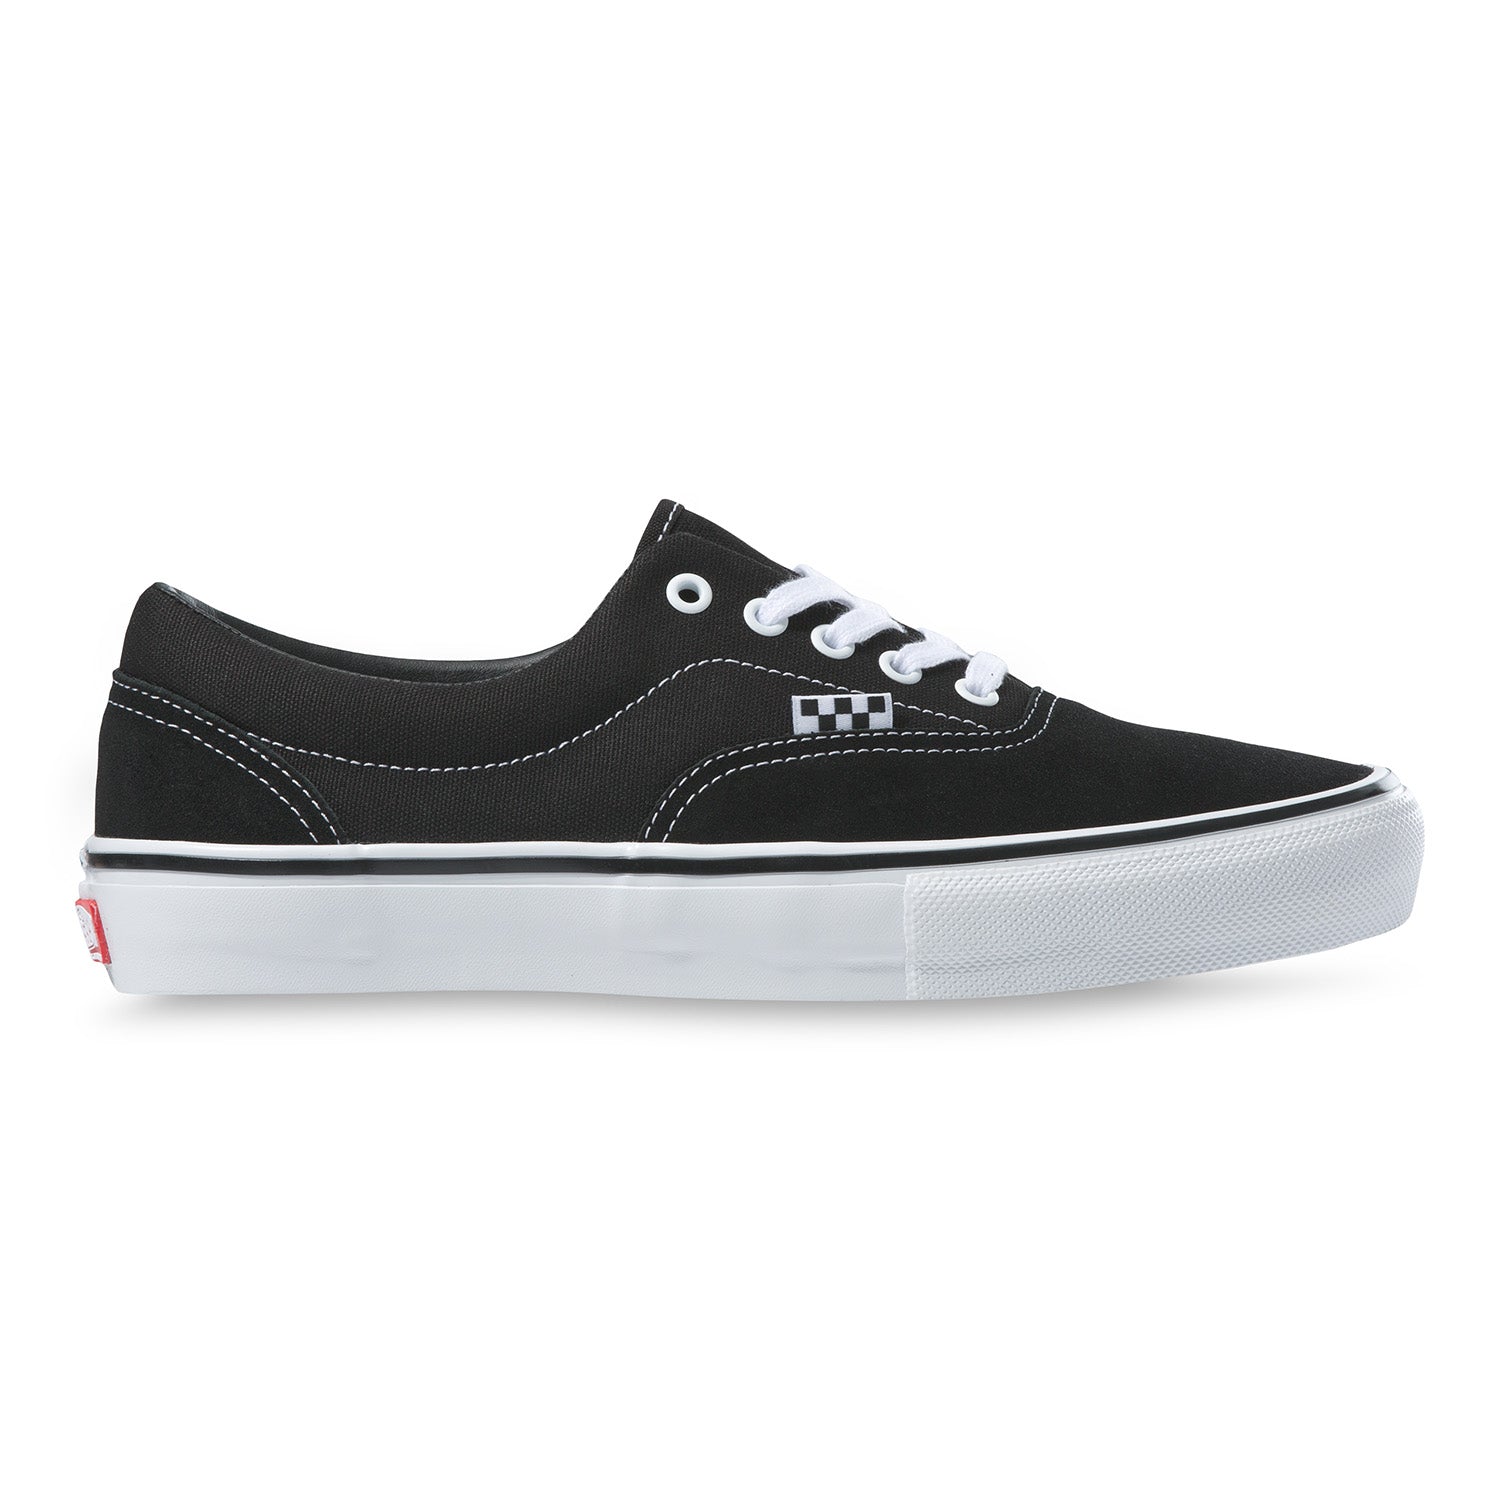 Zapatilla Skate Era Black/white - Vans